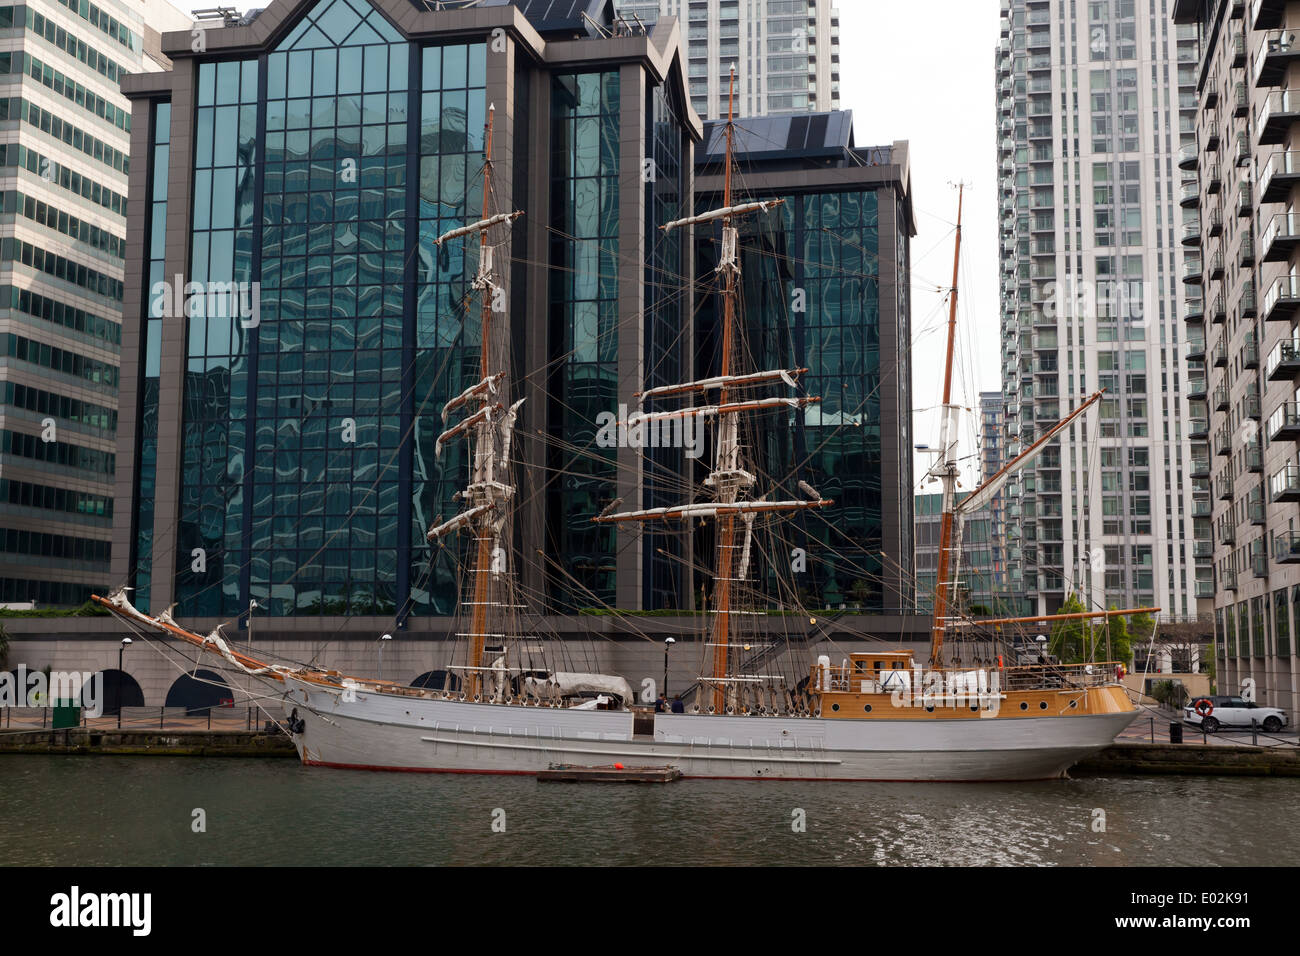 Kaskelot, trois-mâts barque, amarrée à Canary Wharf, London Banque D'Images